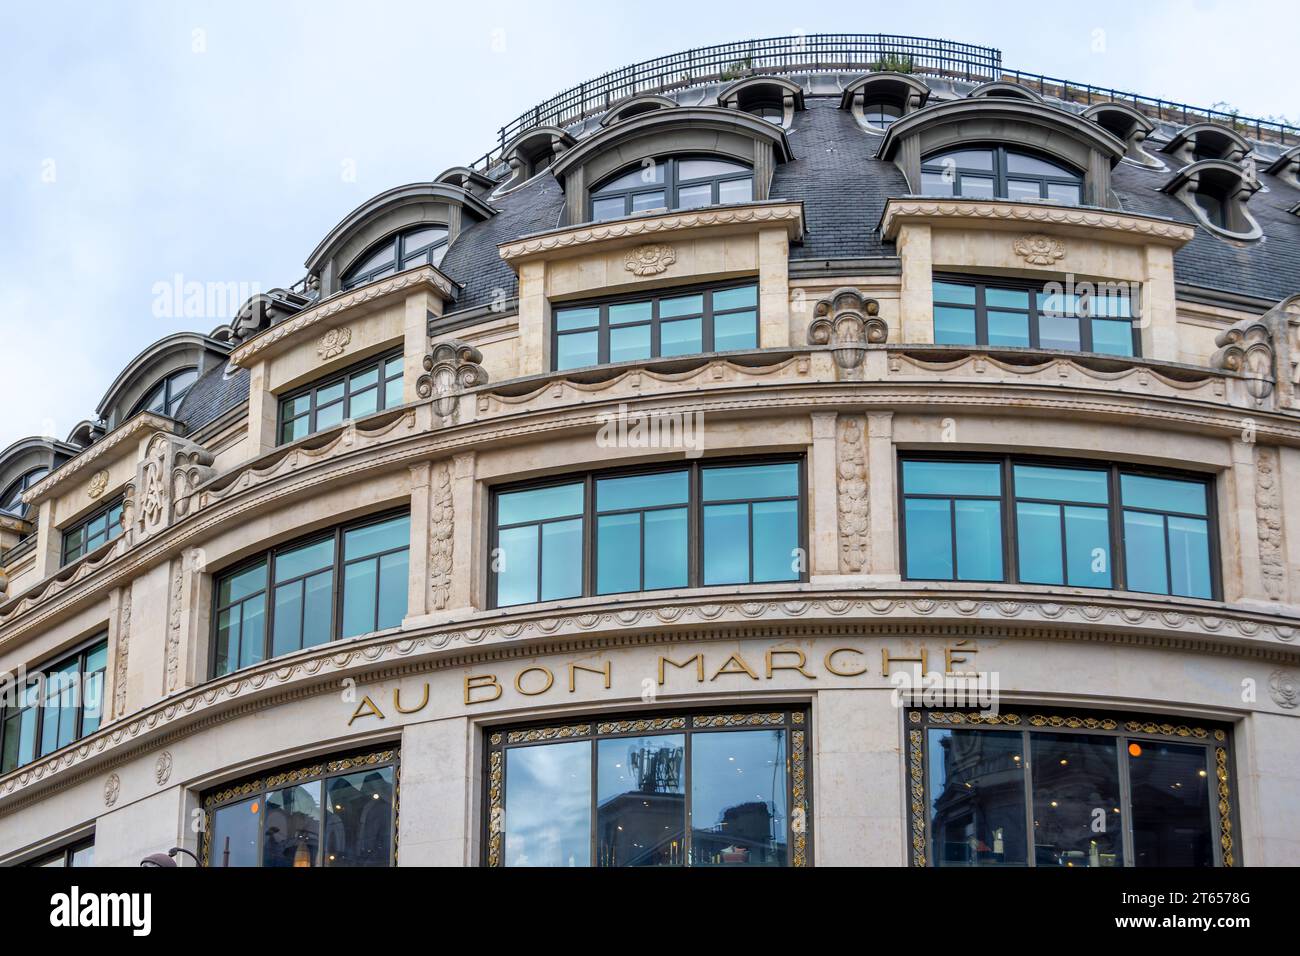 Fassade von Le Bon Marché. Le Bon Marché, früher Au Bon Marché genannt, ist ein französisches Kaufhaus im 7. Arrondissement von Paris Stockfoto